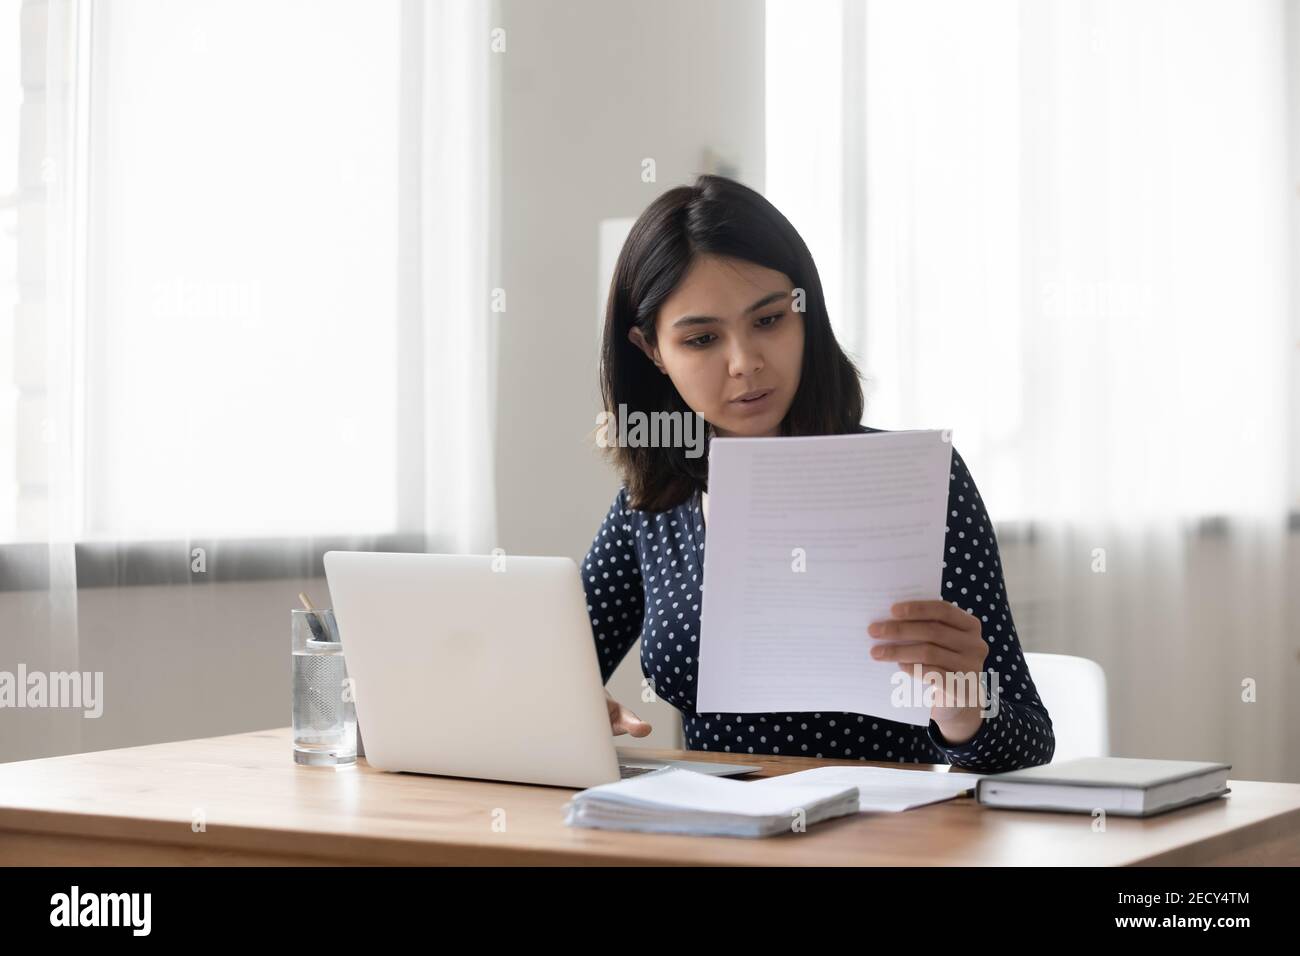 Femme asiatique du millénaire attentive tenant un document papier de lettre Banque D'Images